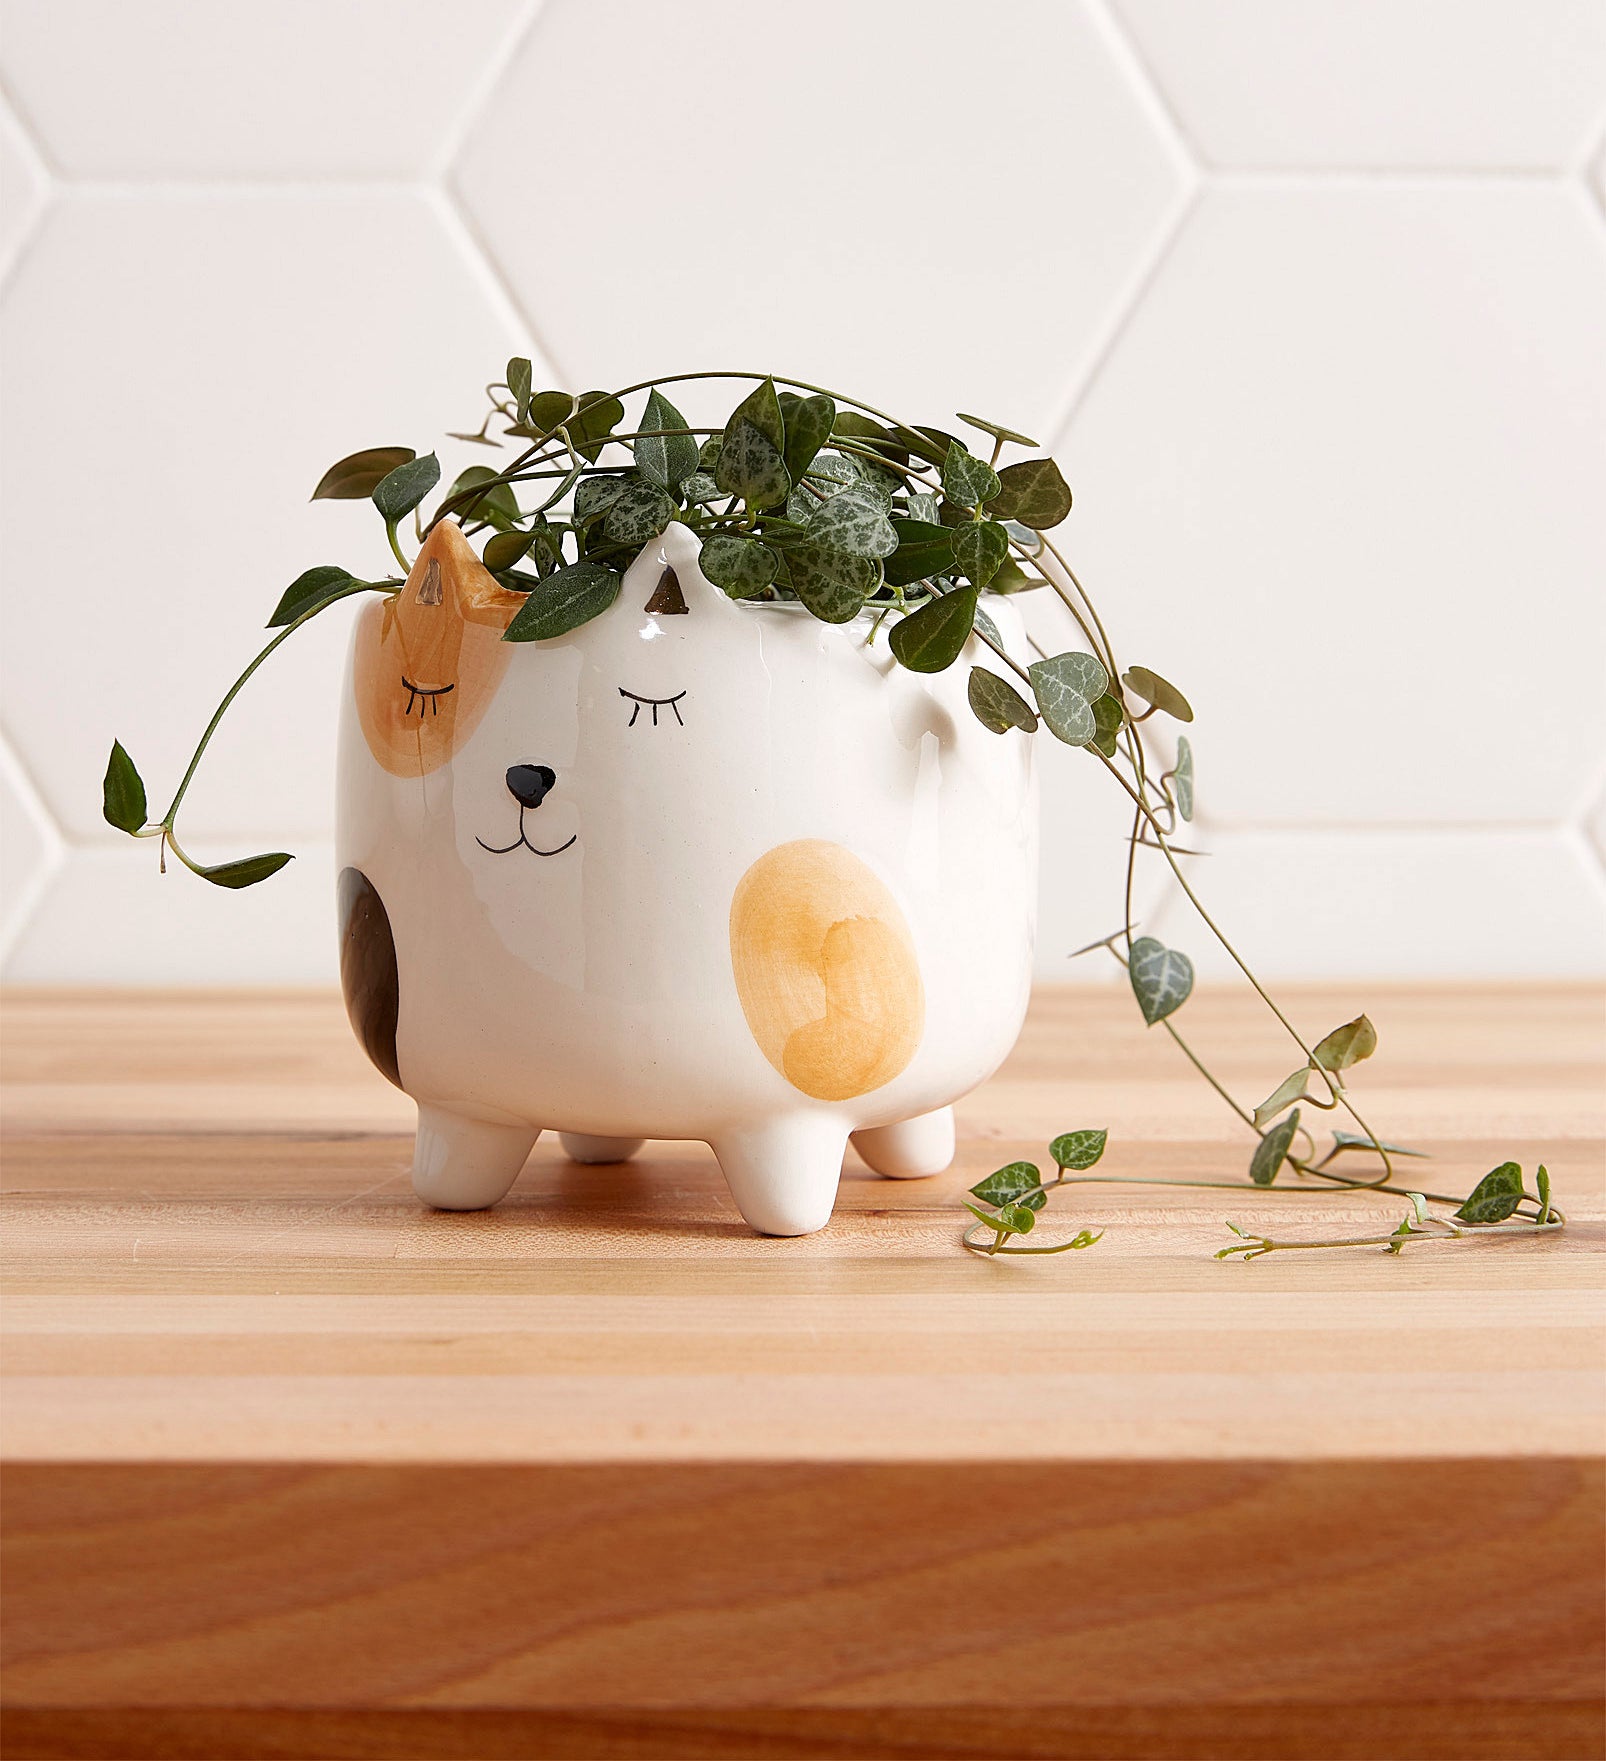 A super-cute cat-shaped plant pot 